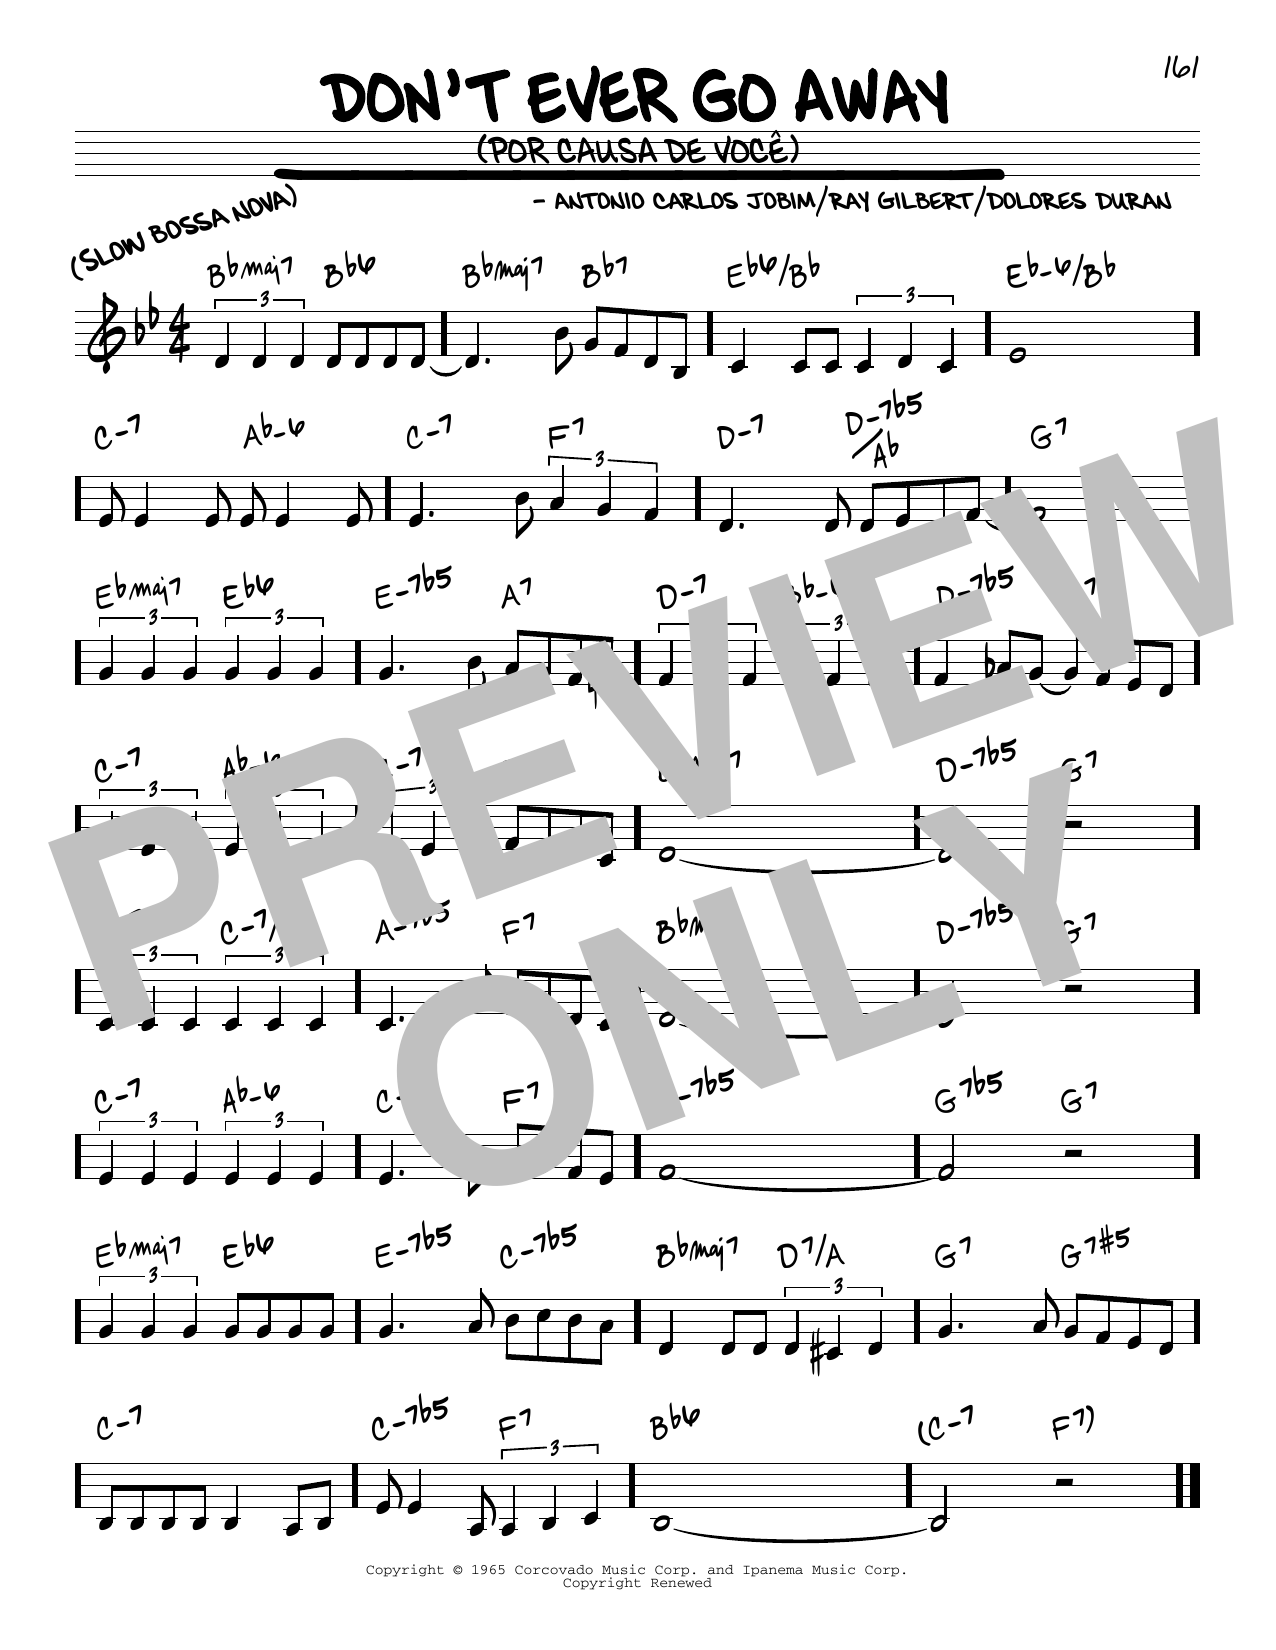 Antonio Carlos Jobim Don't Ever Go Away (Por Causa De Voce) Sheet Music Notes & Chords for Piano, Vocal & Guitar (Right-Hand Melody) - Download or Print PDF